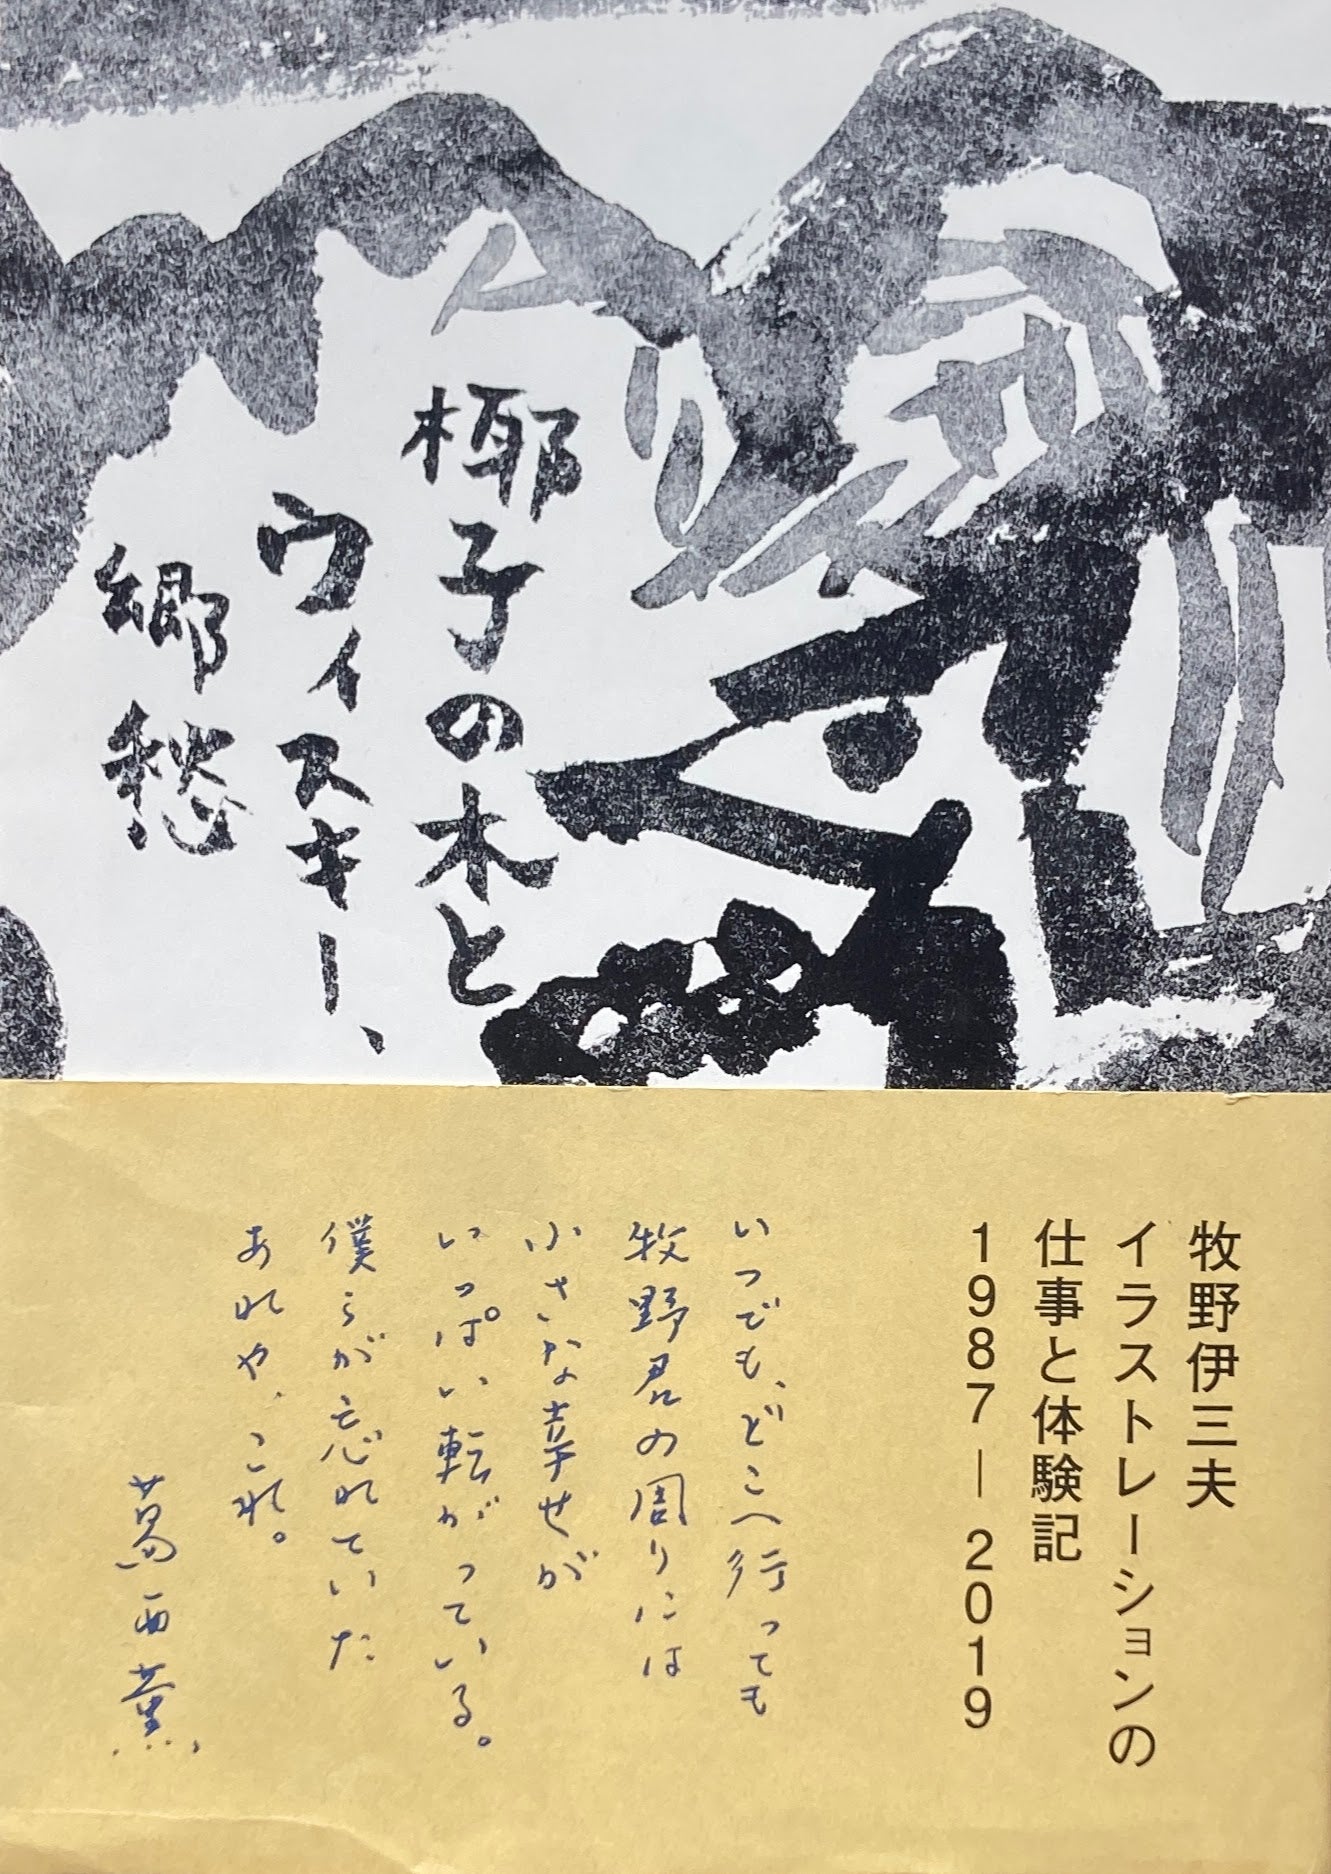 牧野伊三夫イラストレーションの仕事と体験記　1987-2019　椰子の木とウイスキー、郷愁　